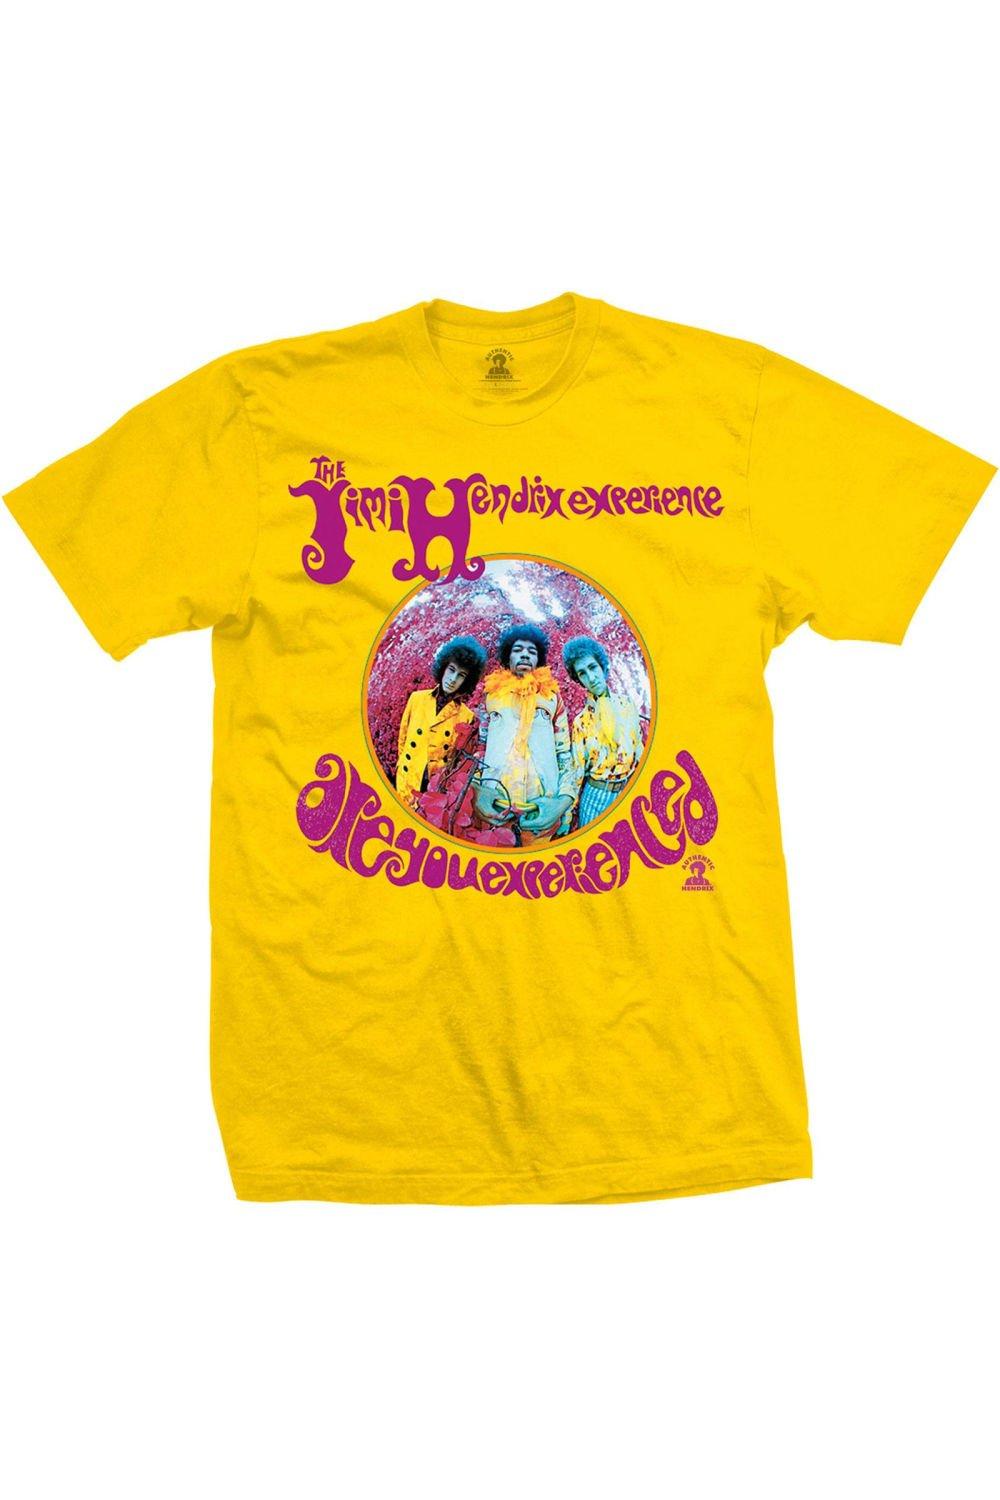 футболка вы опытный jimi hendrix фиолетовый Футболка «Вы опытный» Jimi Hendrix, желтый